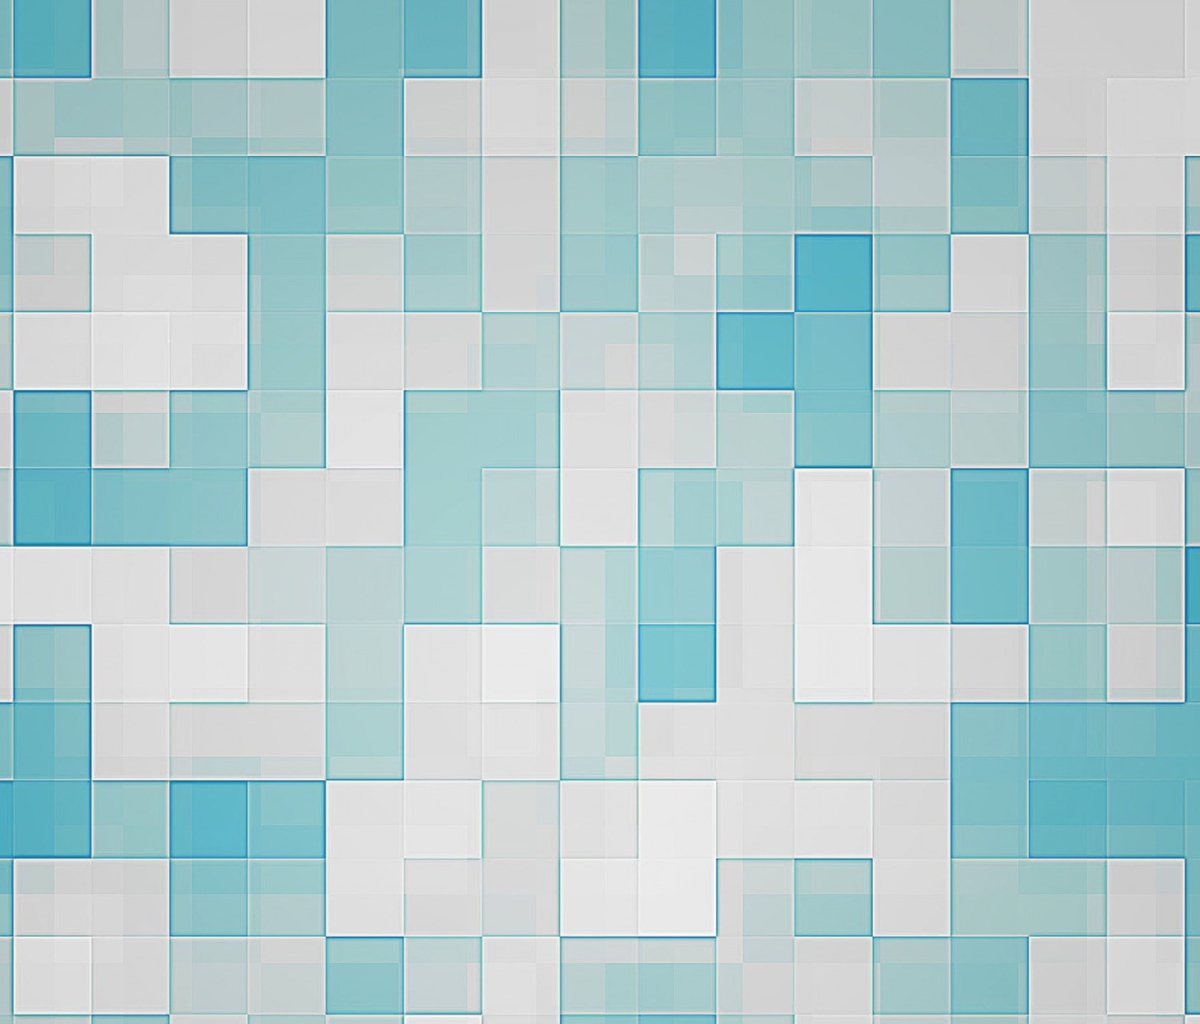 Das Mosaic Wallpaper 1200x1024